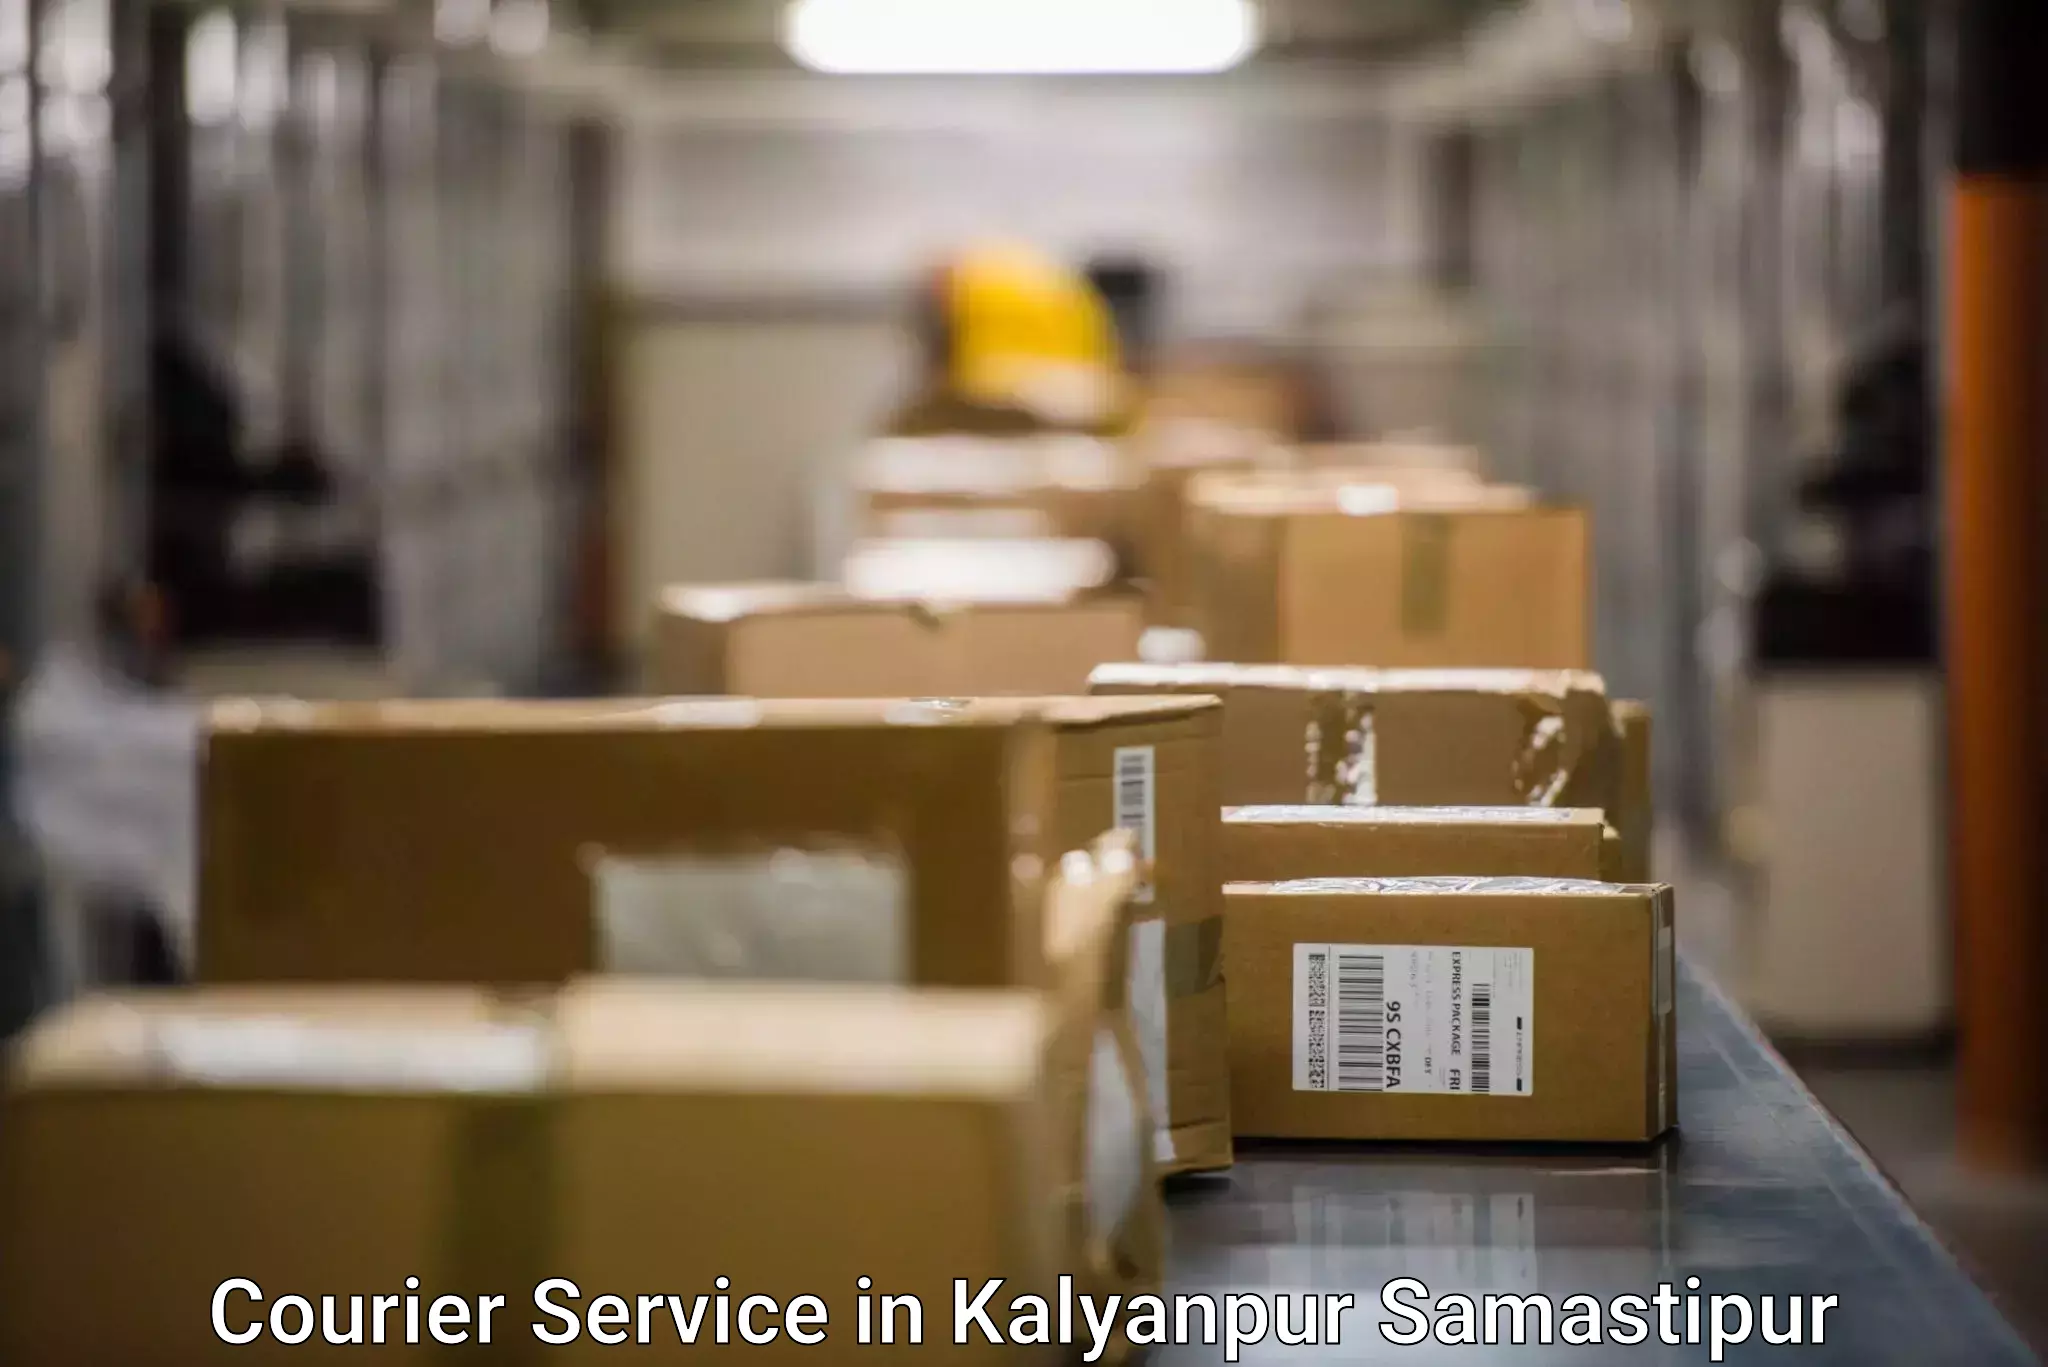 Efficient freight transportation in Kalyanpur Samastipur